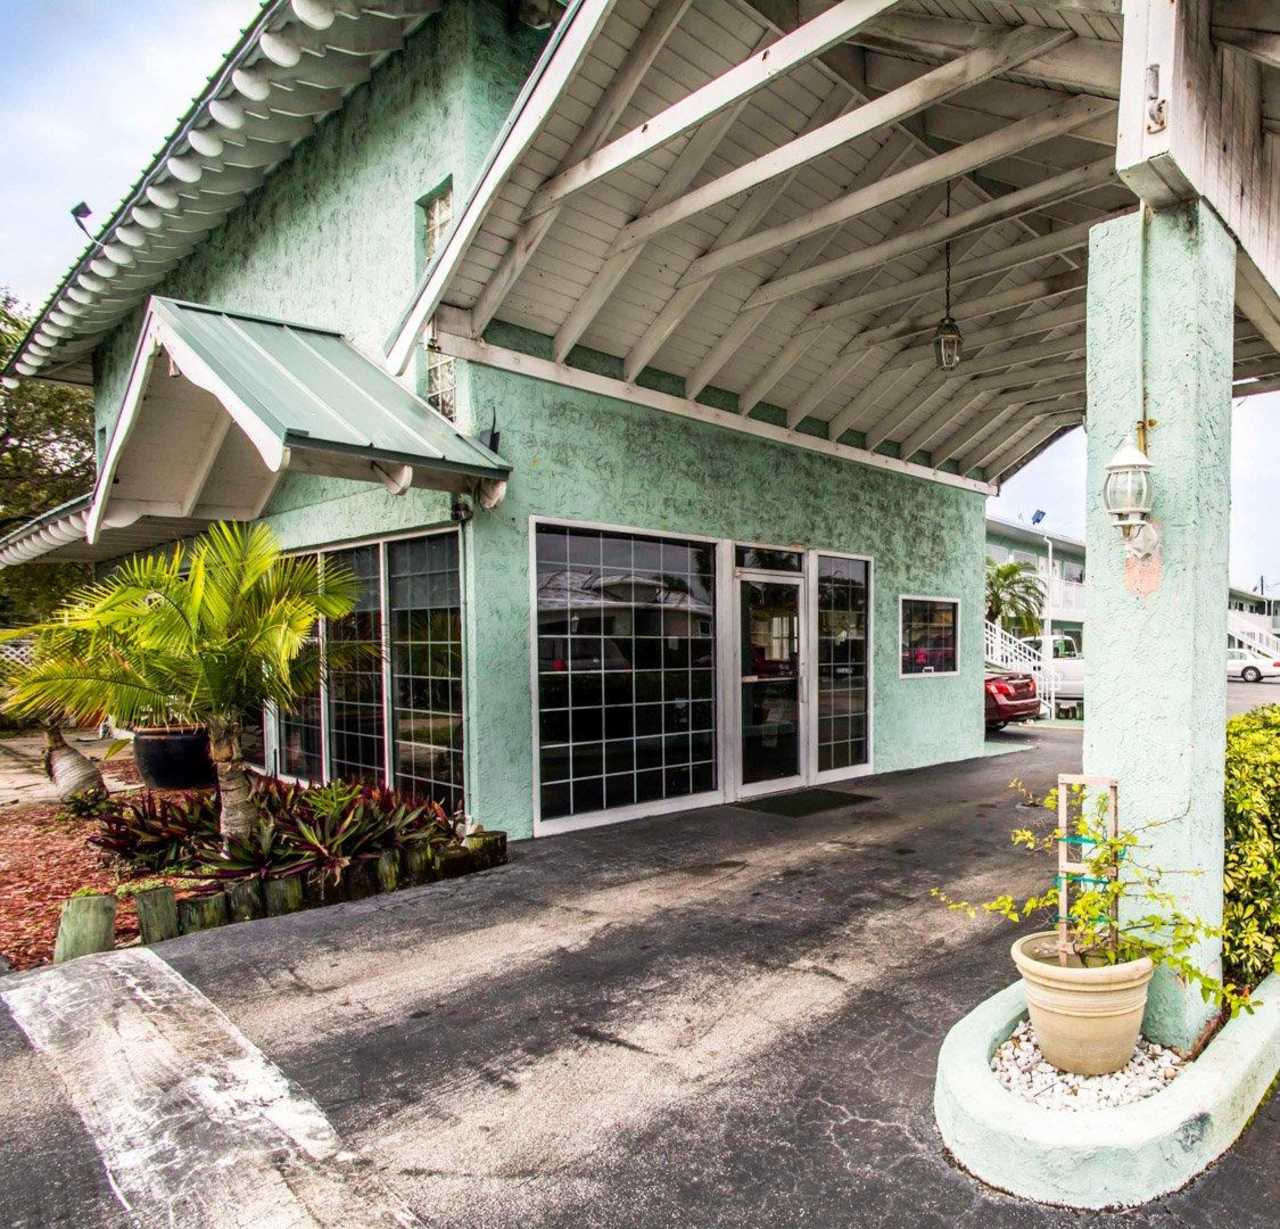 Econo Lodge Cocoa Beach - $99 – Port Canaveral Hotel w/ Free Parking Econo Lodge Cocoa Beach